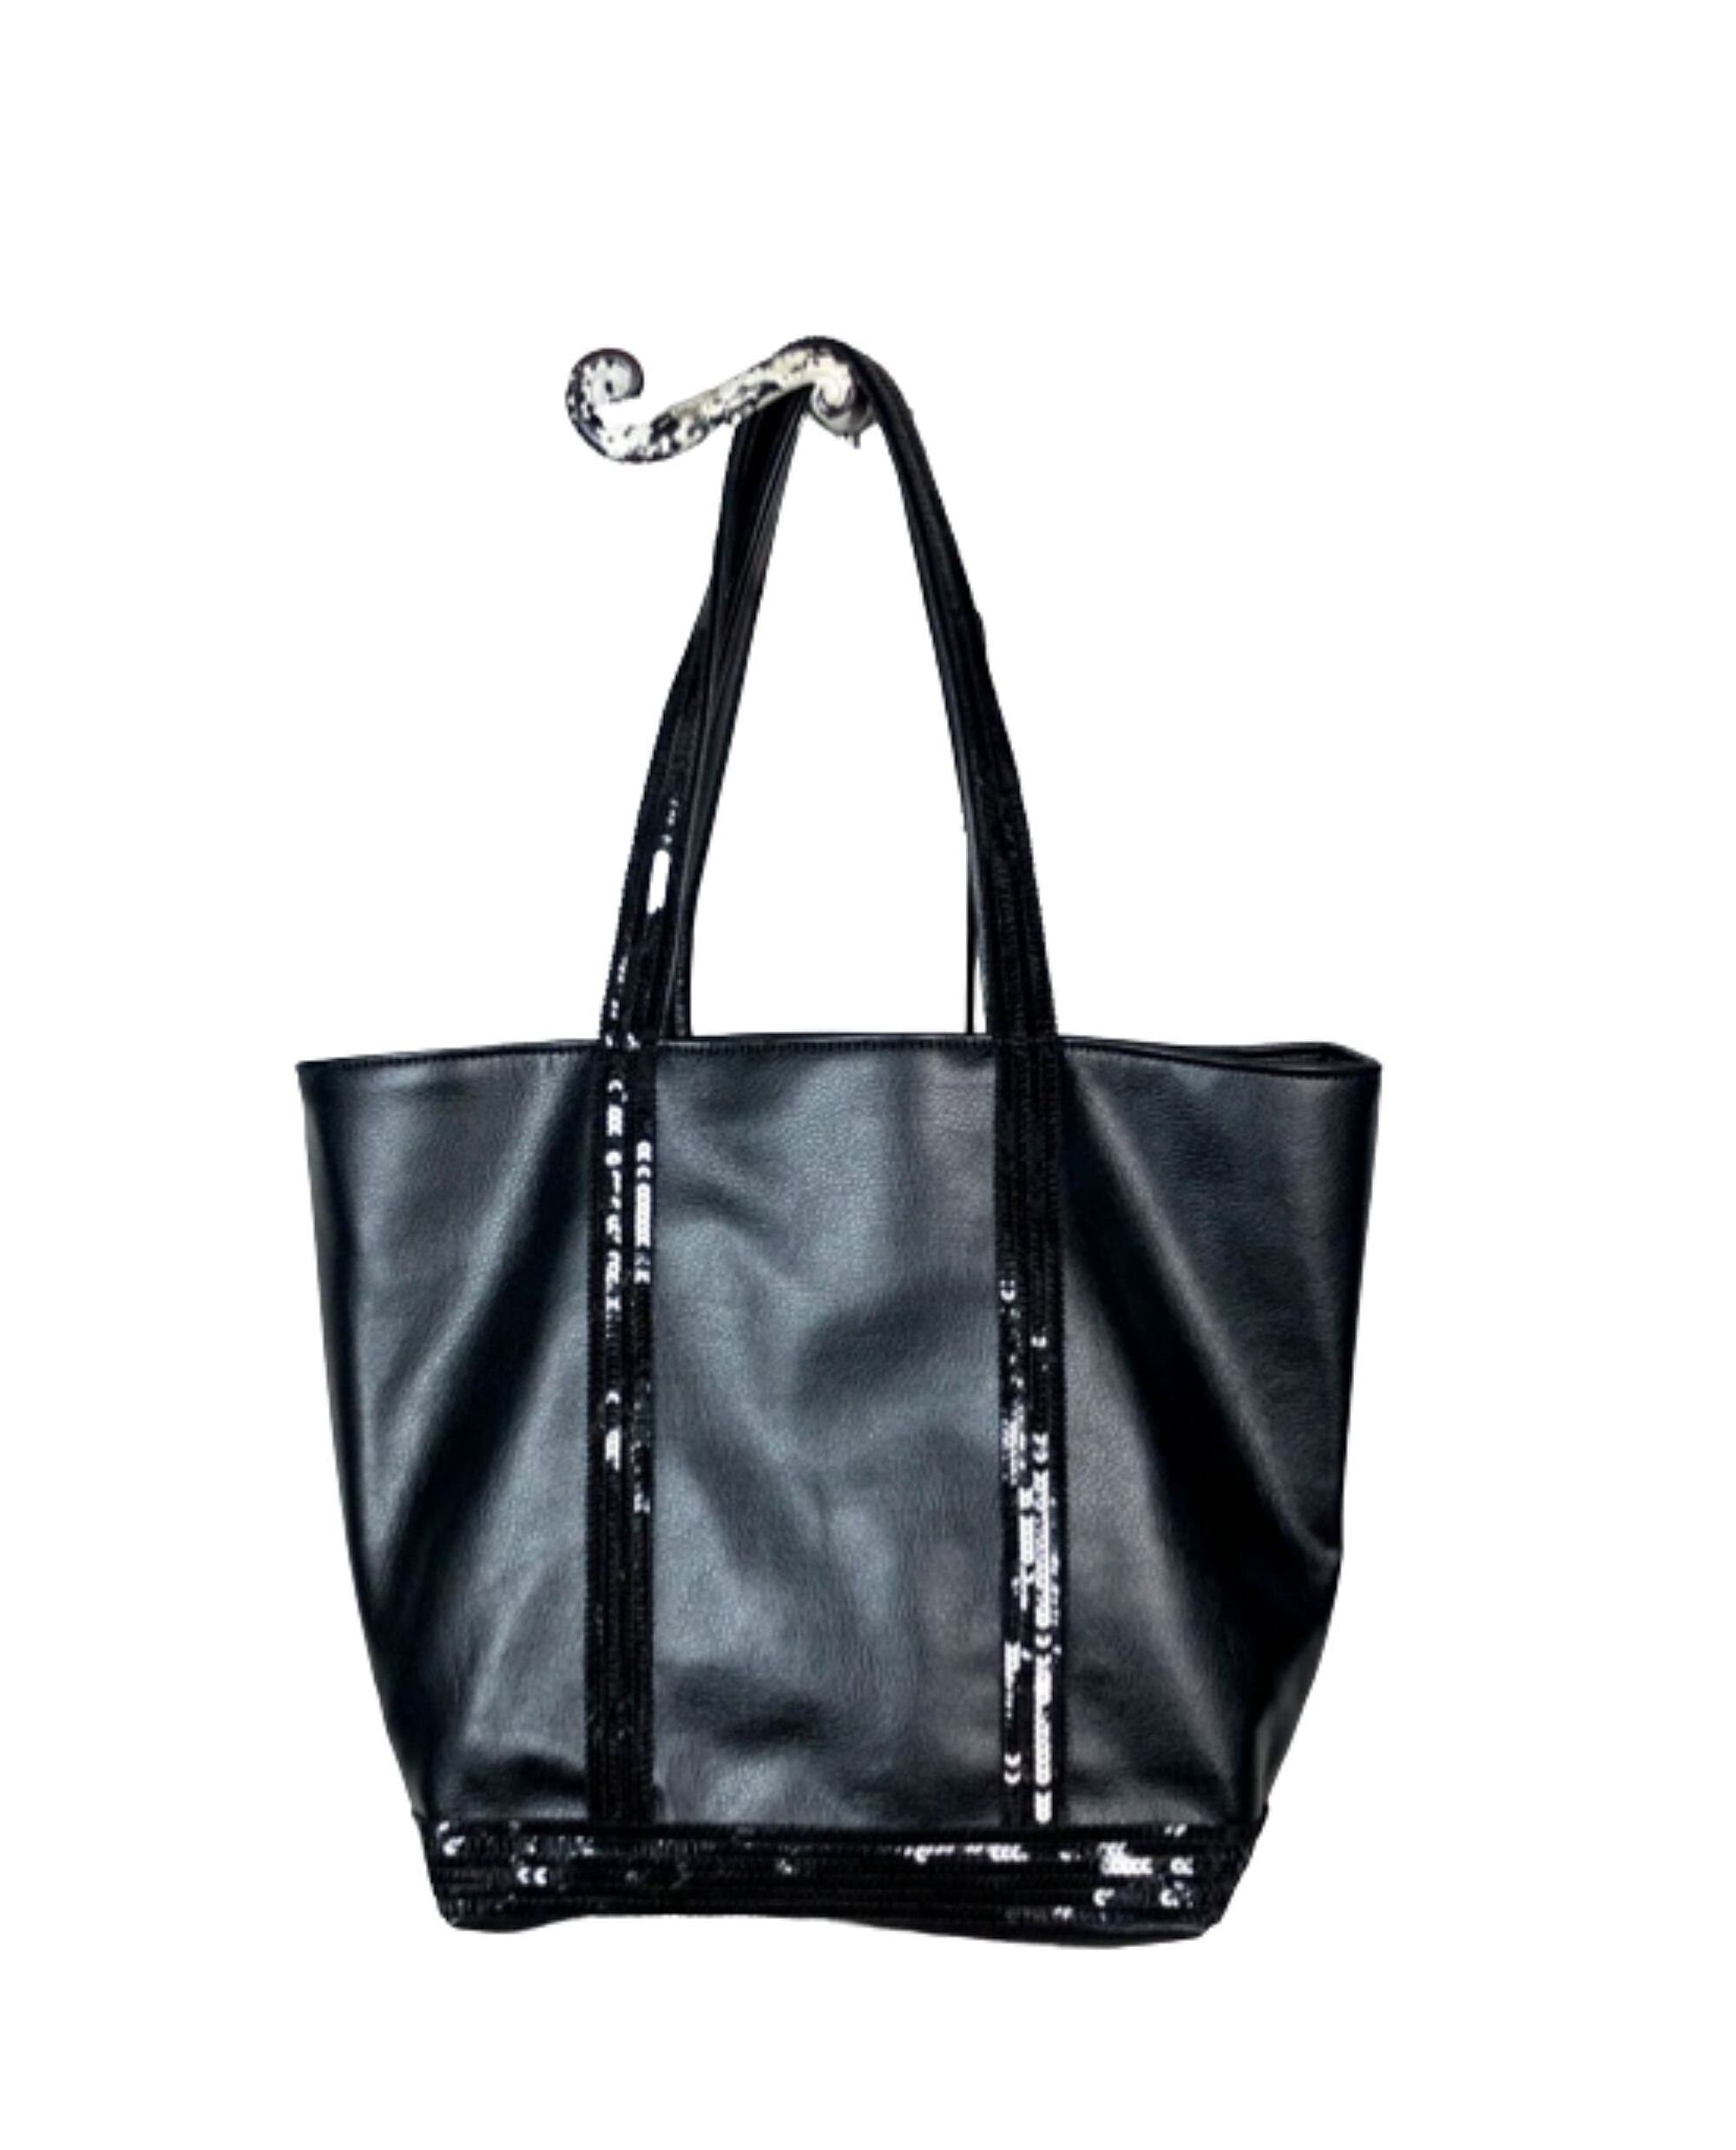 Buy Big BLACK OVERSIZE SHOPPER Bag Shopping Bag Large Tote Black Leather  Shoulder Bag Large Everyday Purse Travel Bag Big Tote Bag Online in India -  Etsy